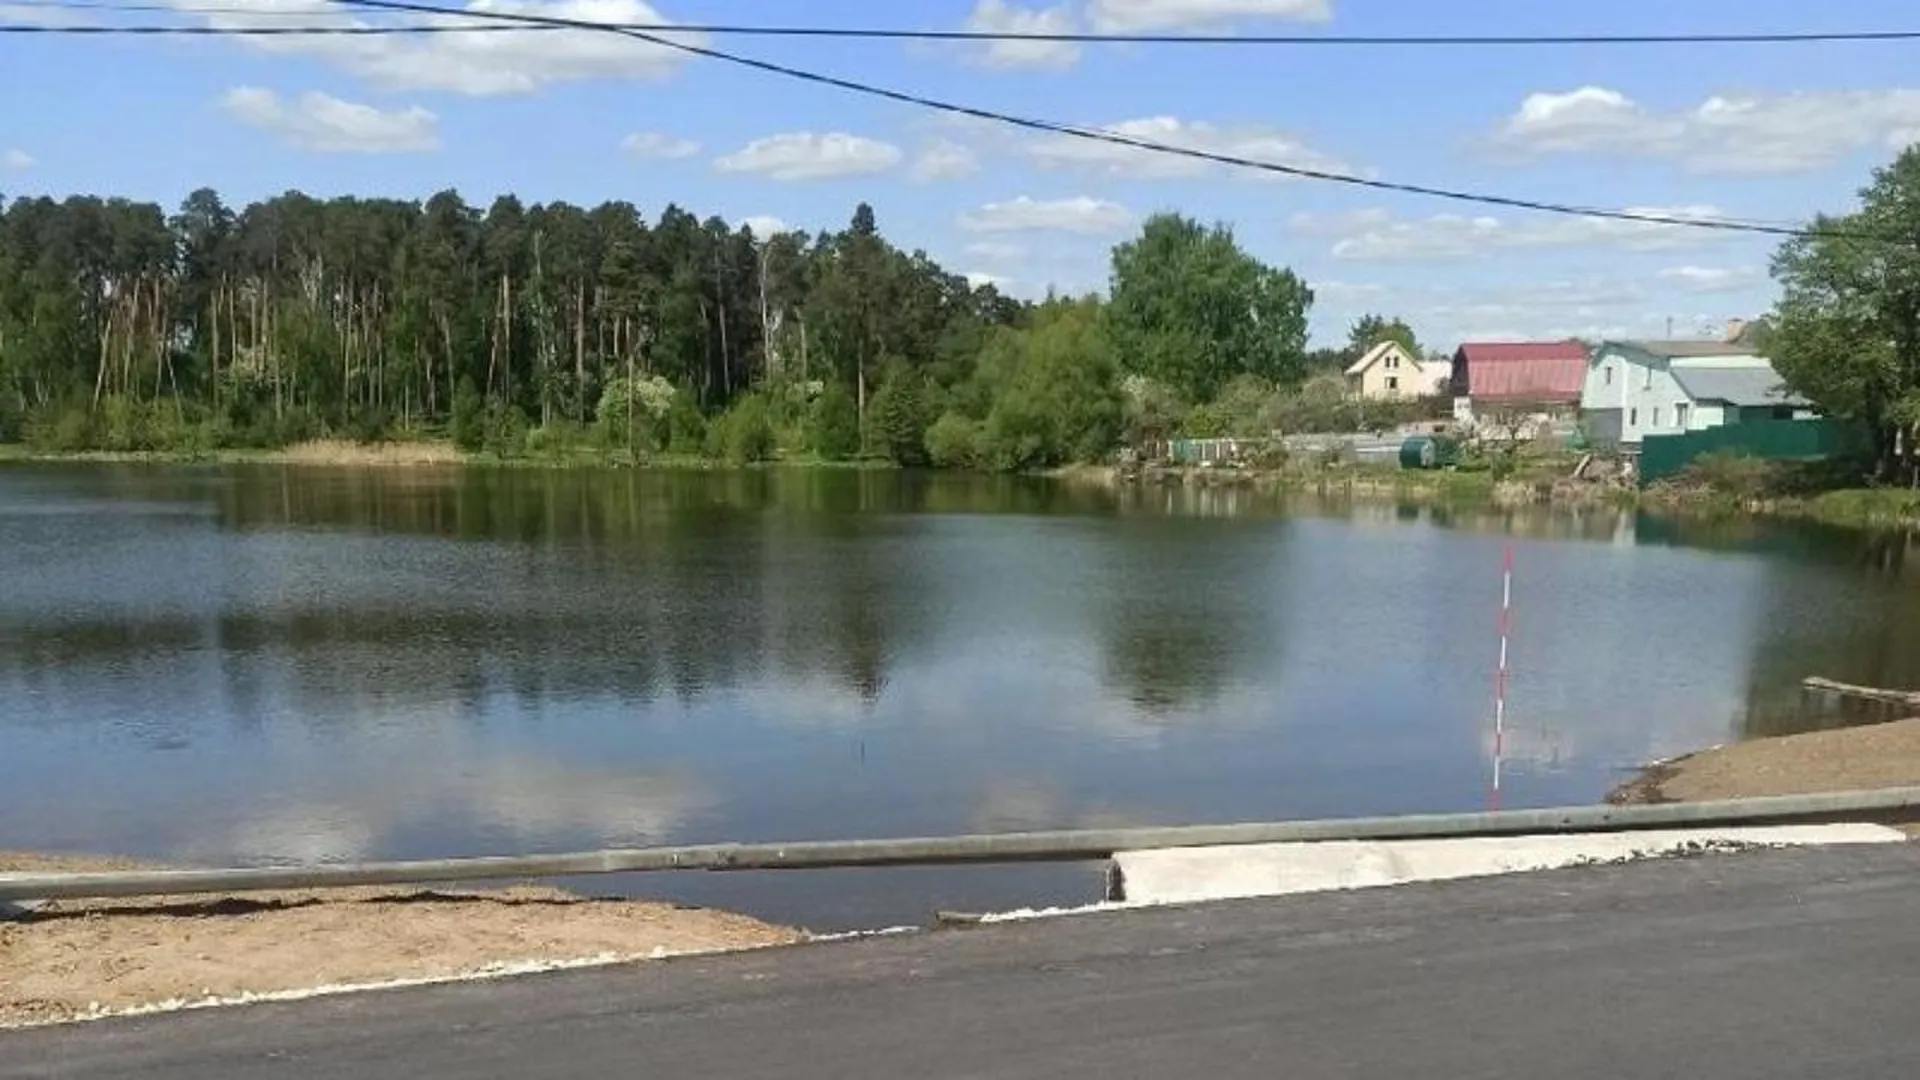 Новый мост возведут через реку Людовну в Подмосковье